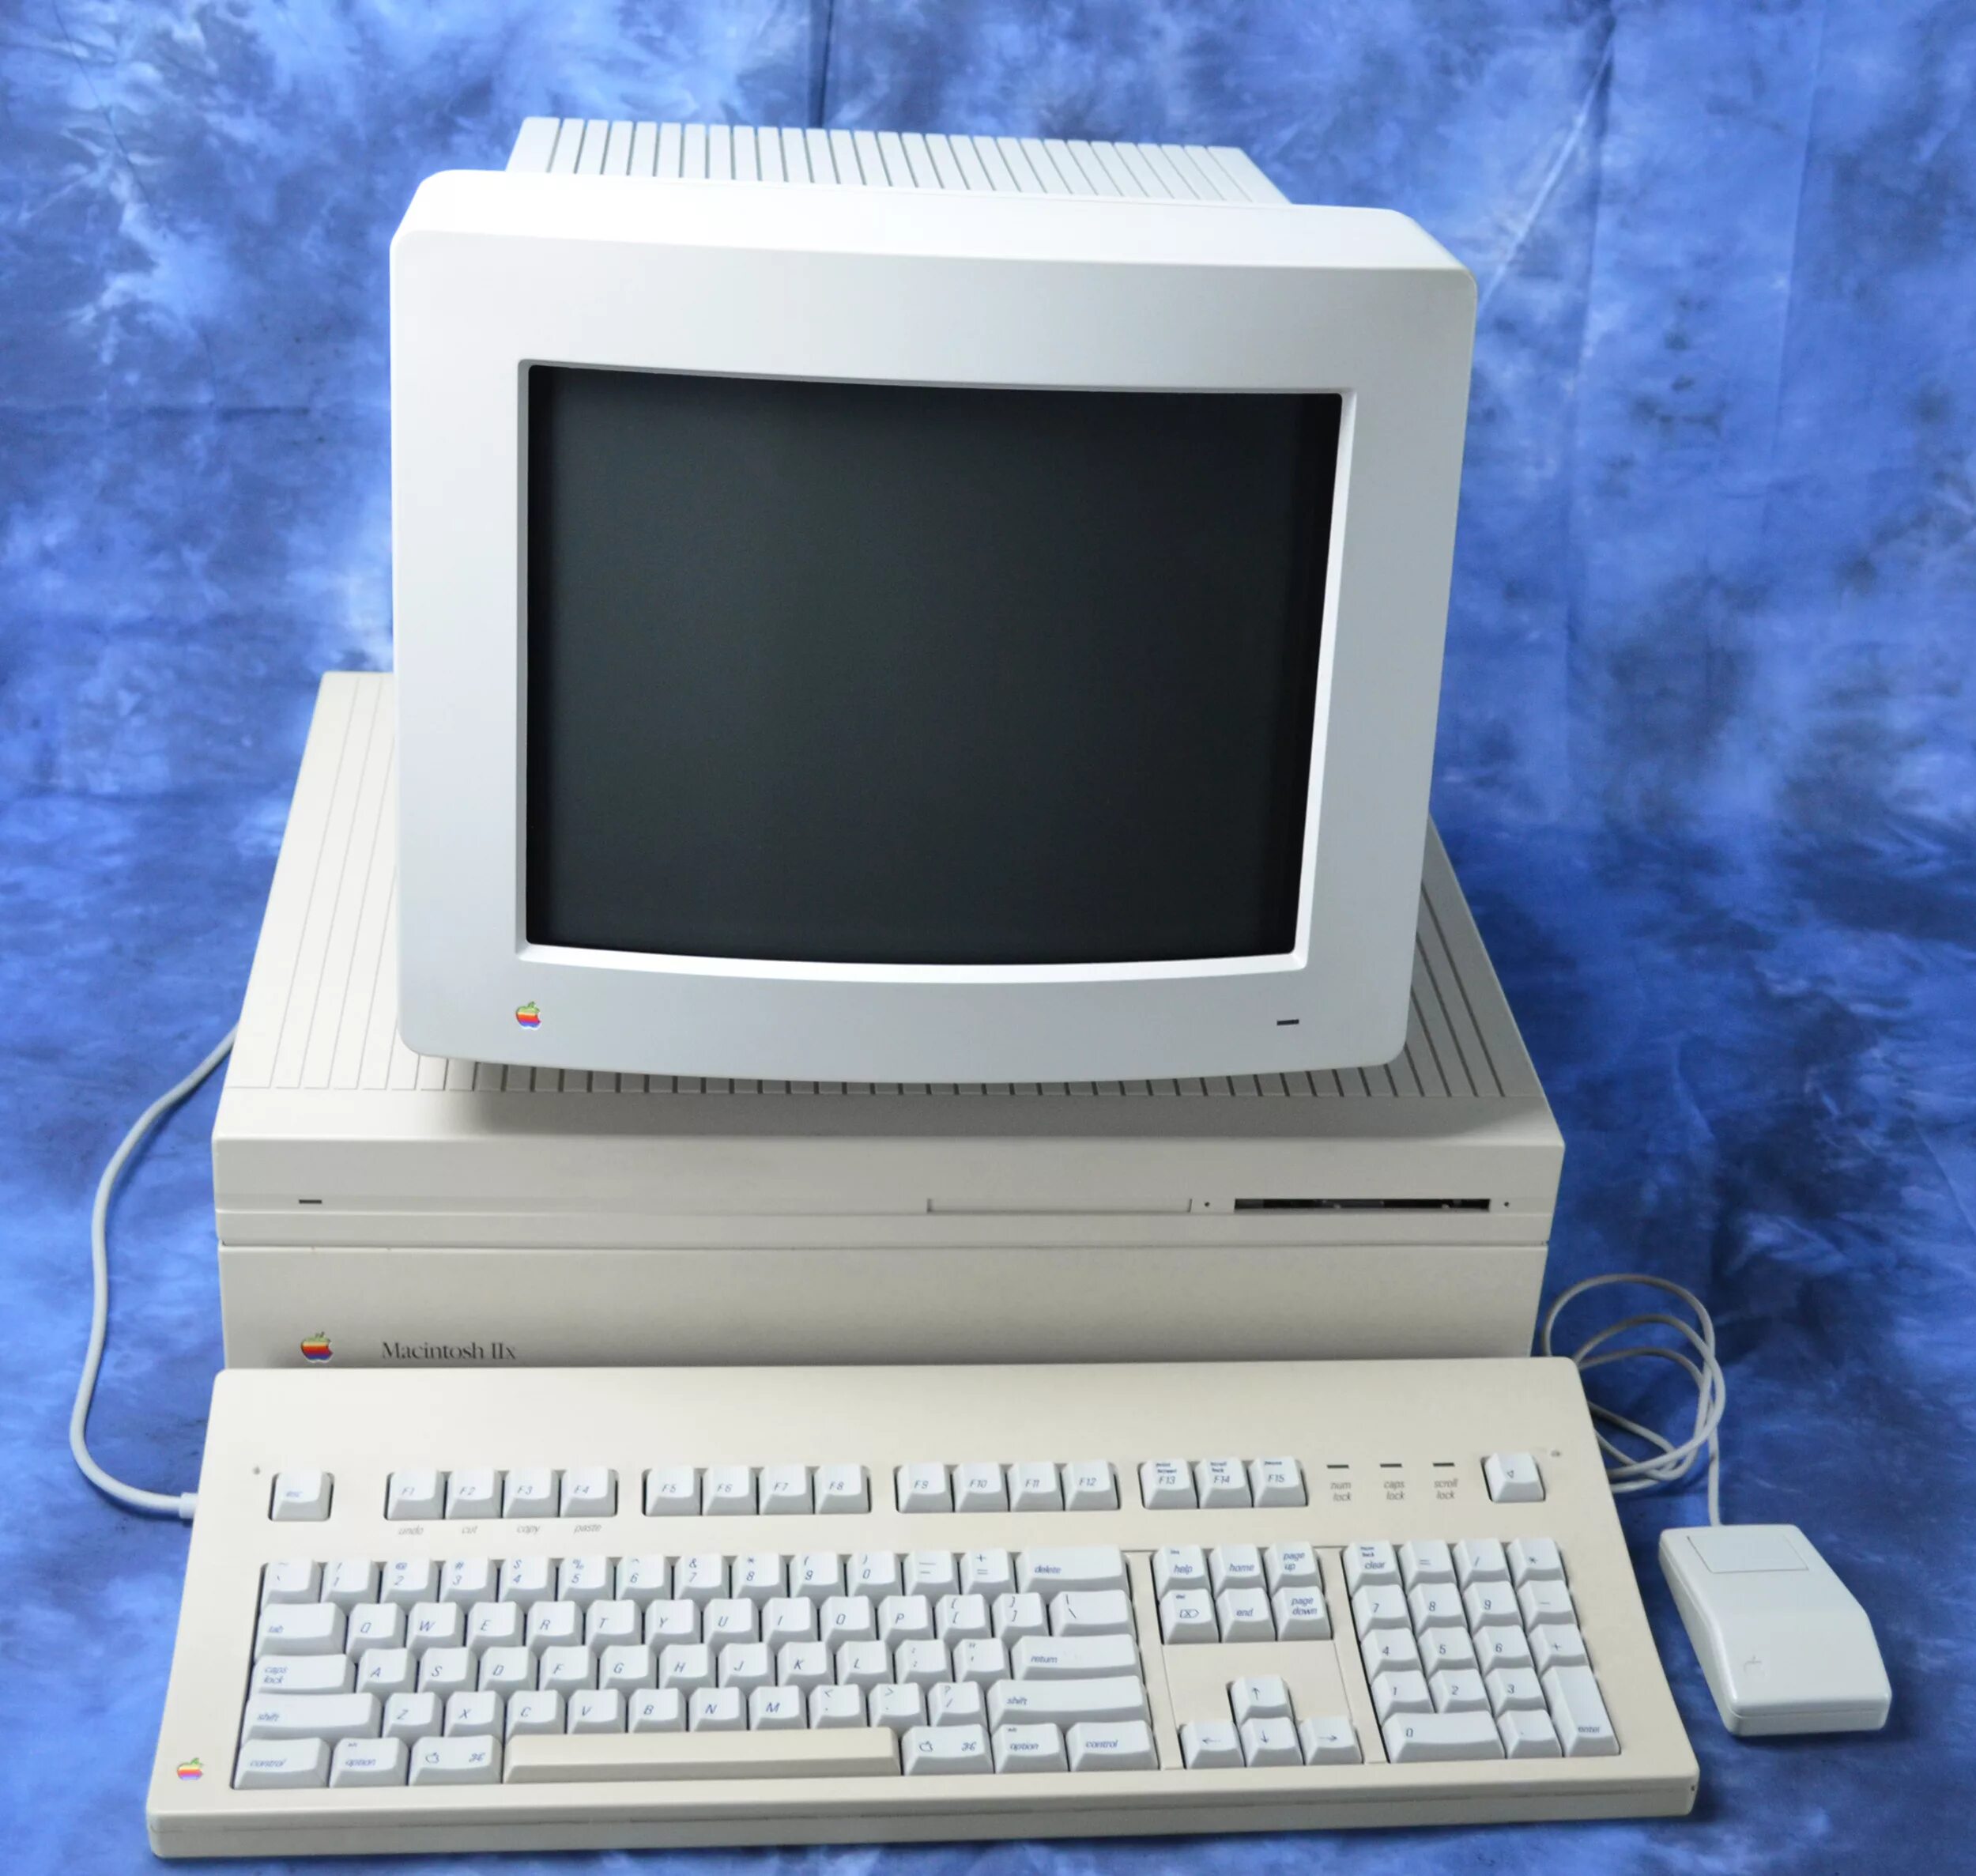 Компьютер Apple Macintosh (1984). Первые компьютеры Эппл макинтош. Эппл макинтош 1984. Компьютер макинтош 1984.